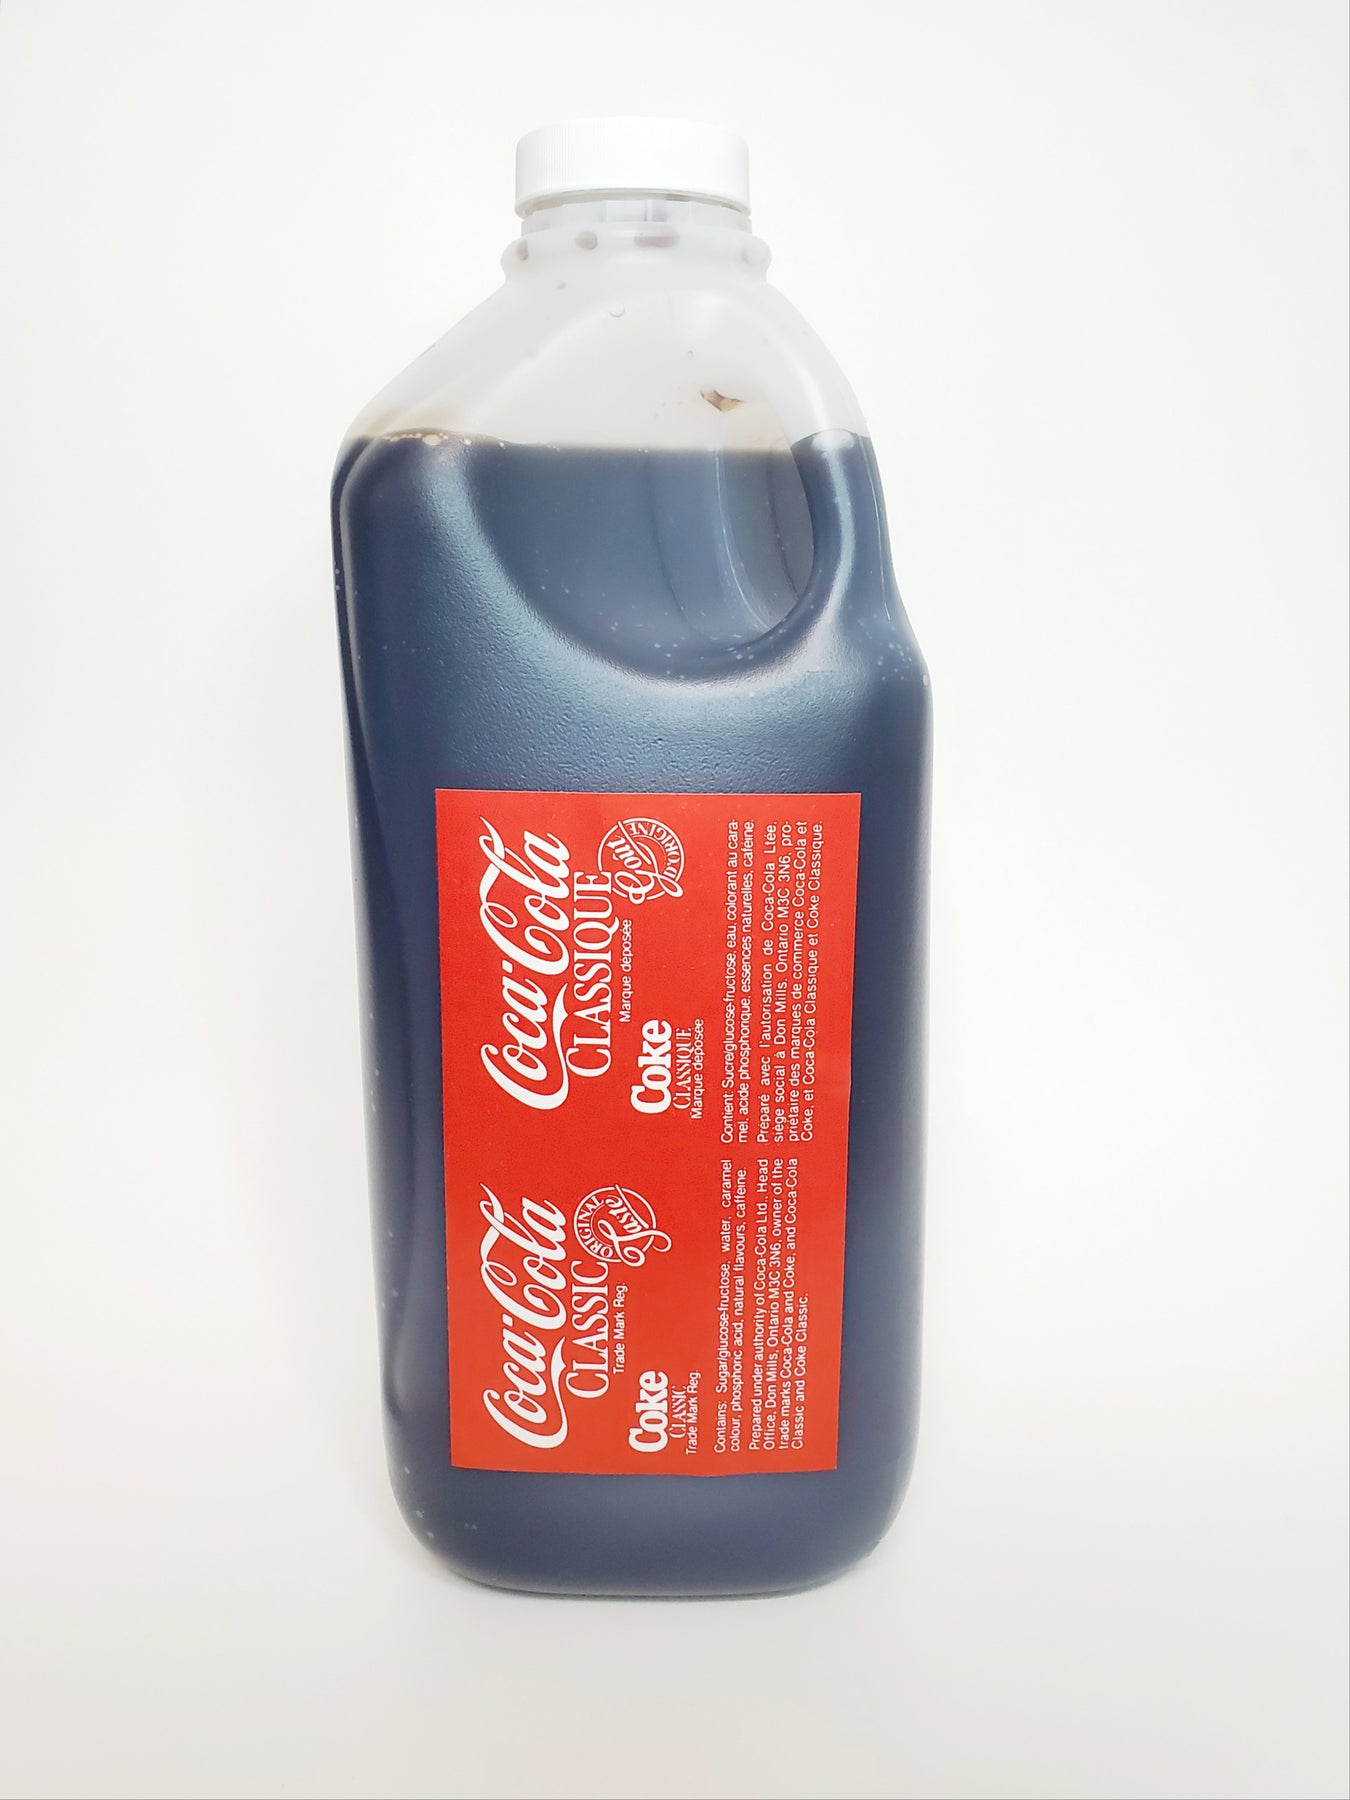 Suchergebnis Auf  Für: Coca Cola Sirup